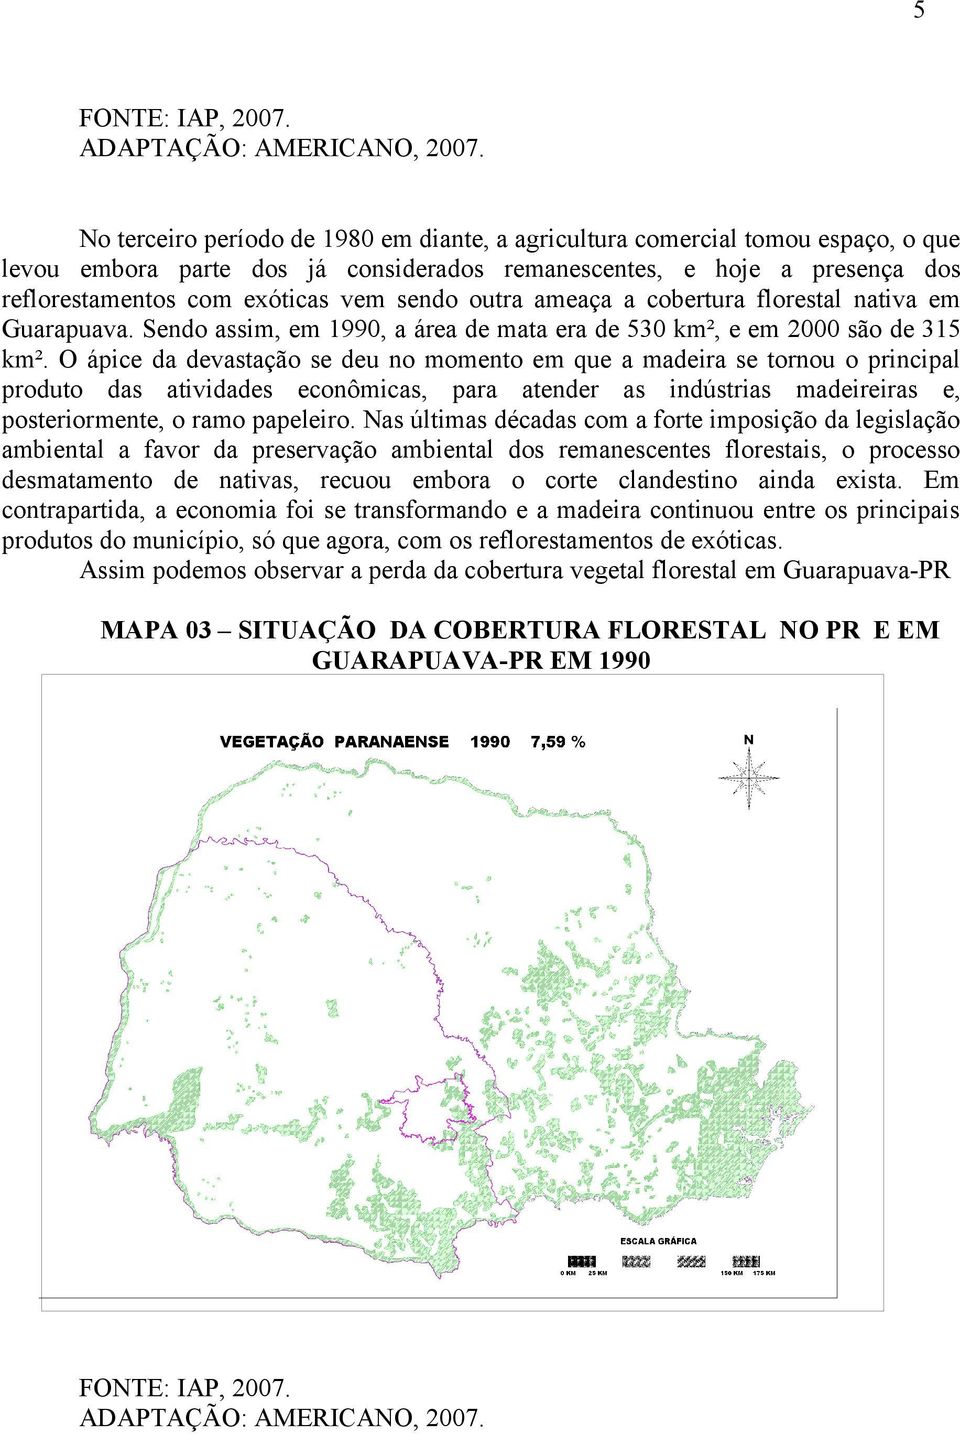 outra ameaça a cobertura florestal nativa em Guarapuava. Sendo assim, em 1990, a área de mata era de 530 km², e em 2000 são de 315 km².